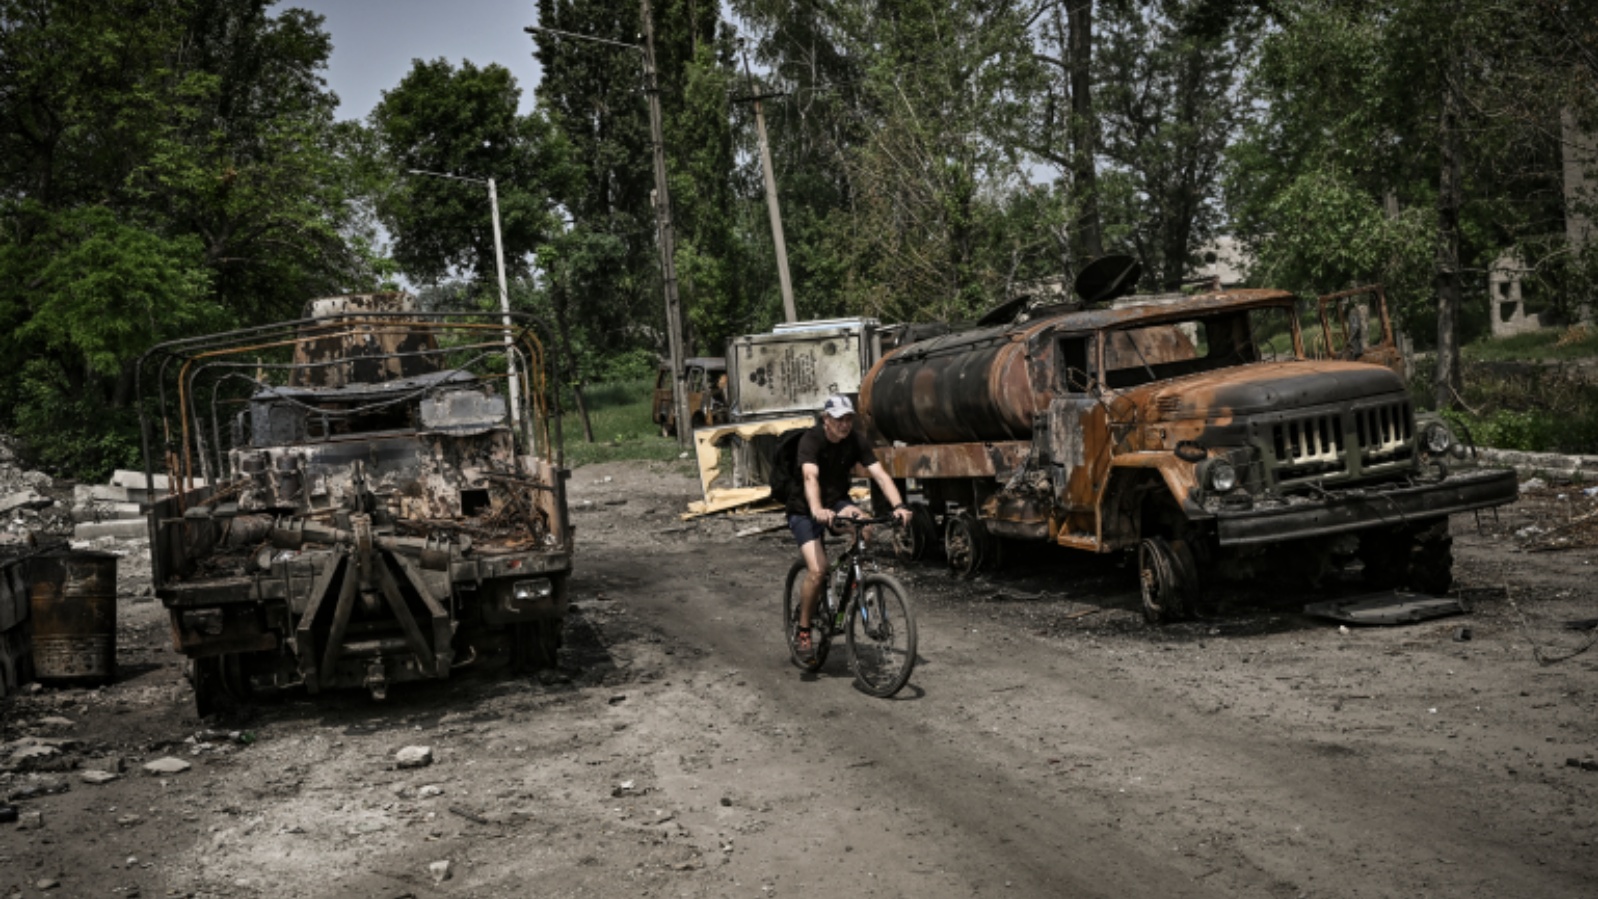 رجل يركب دراجته بين شاحنتين عسكريتين مدمرتين في مدينة ليسيتشانسك، منطقة دونباس بشرق أوكرانيا، في 11 يونيو 2022